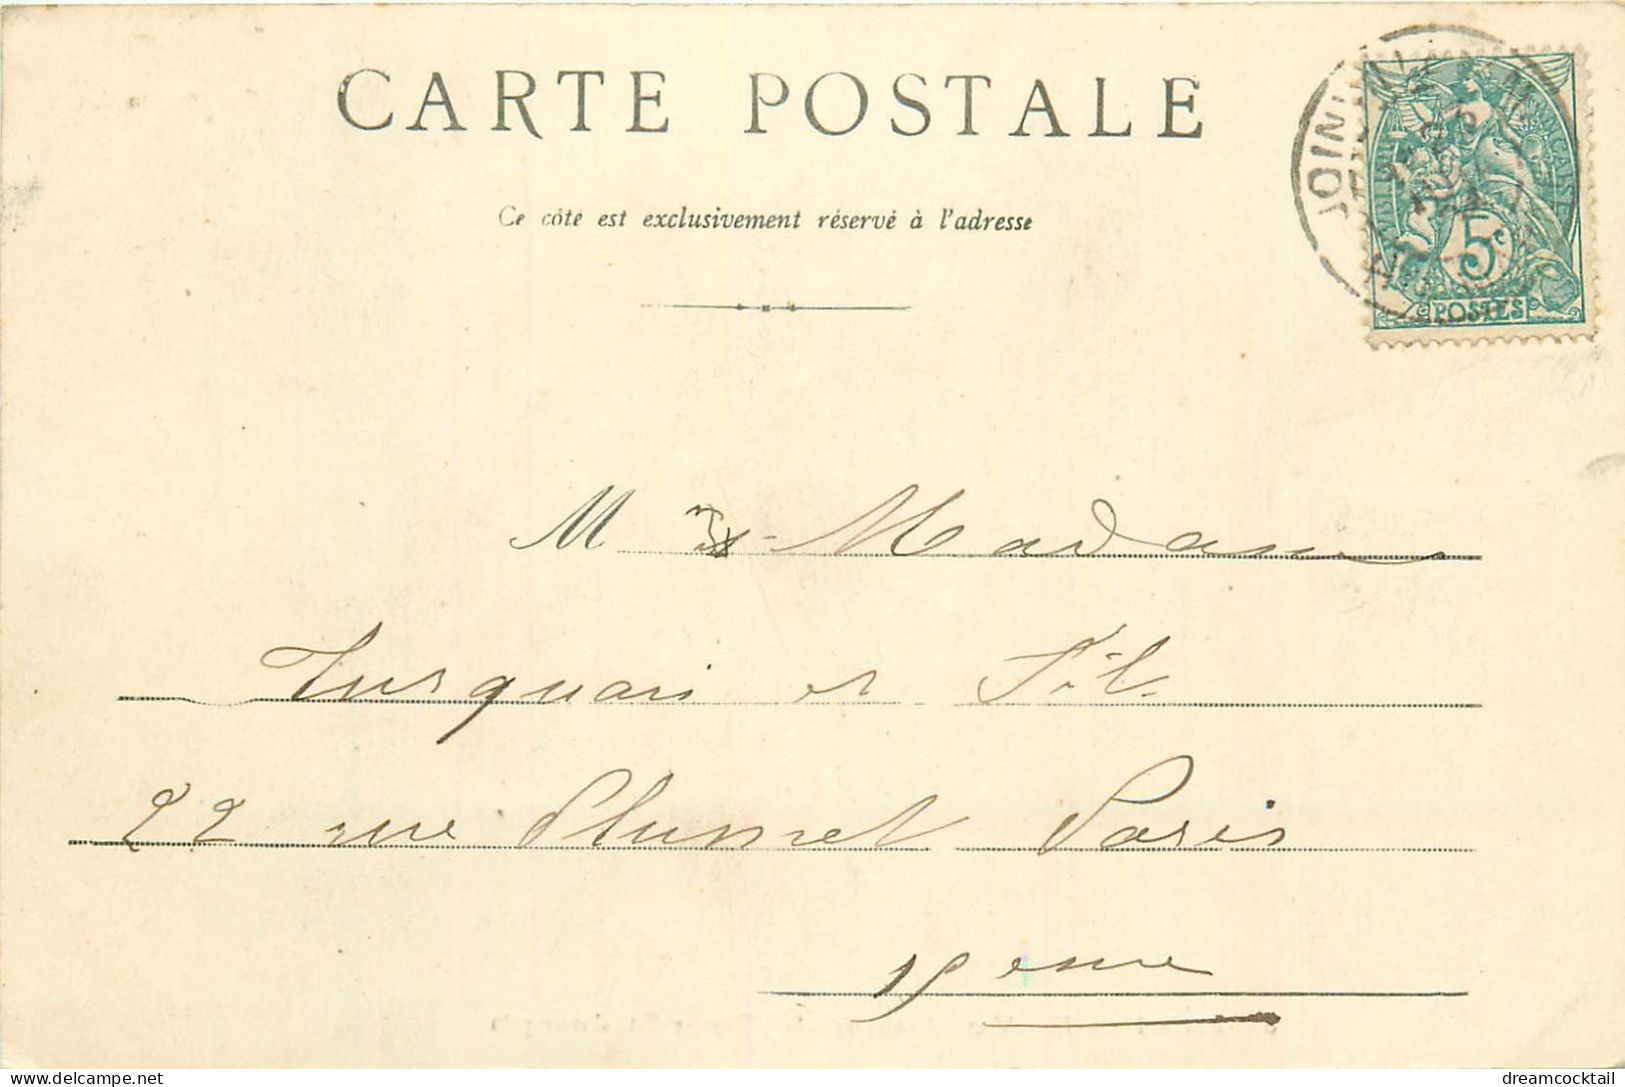 (S) Superbe LOT n°13 de 50 cartes postales anciennes sur toute la France